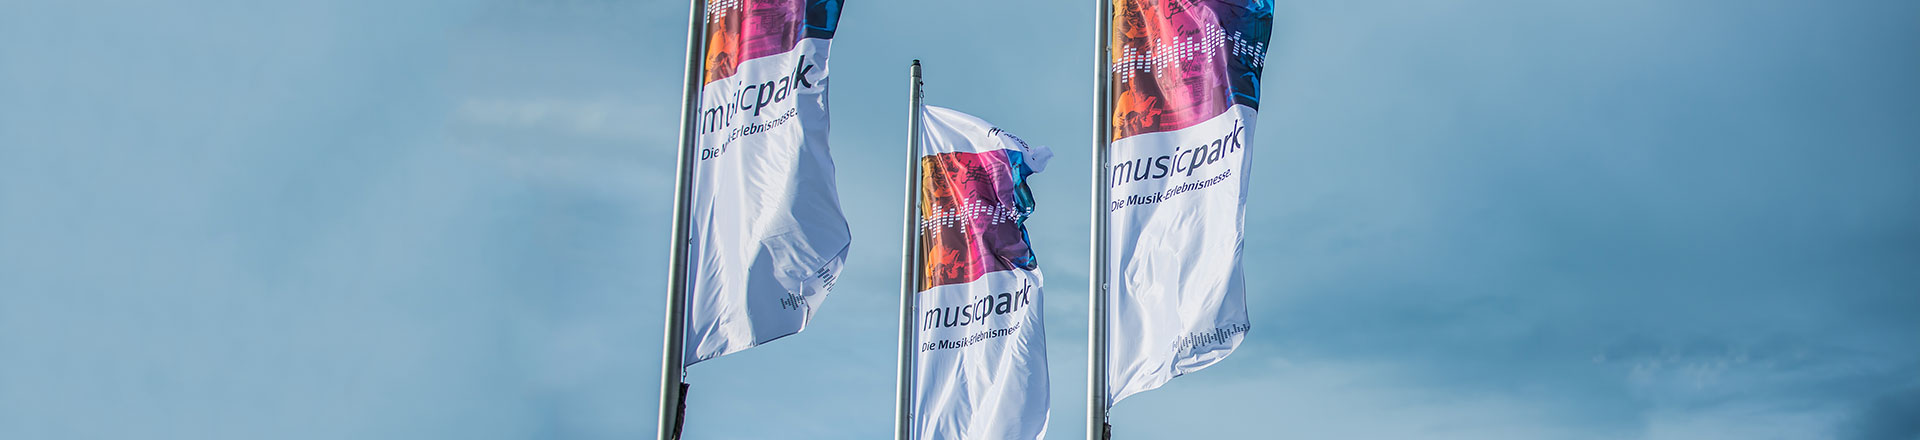 Musicpark 2021 - nowe targi muzyczne w Lipsku 